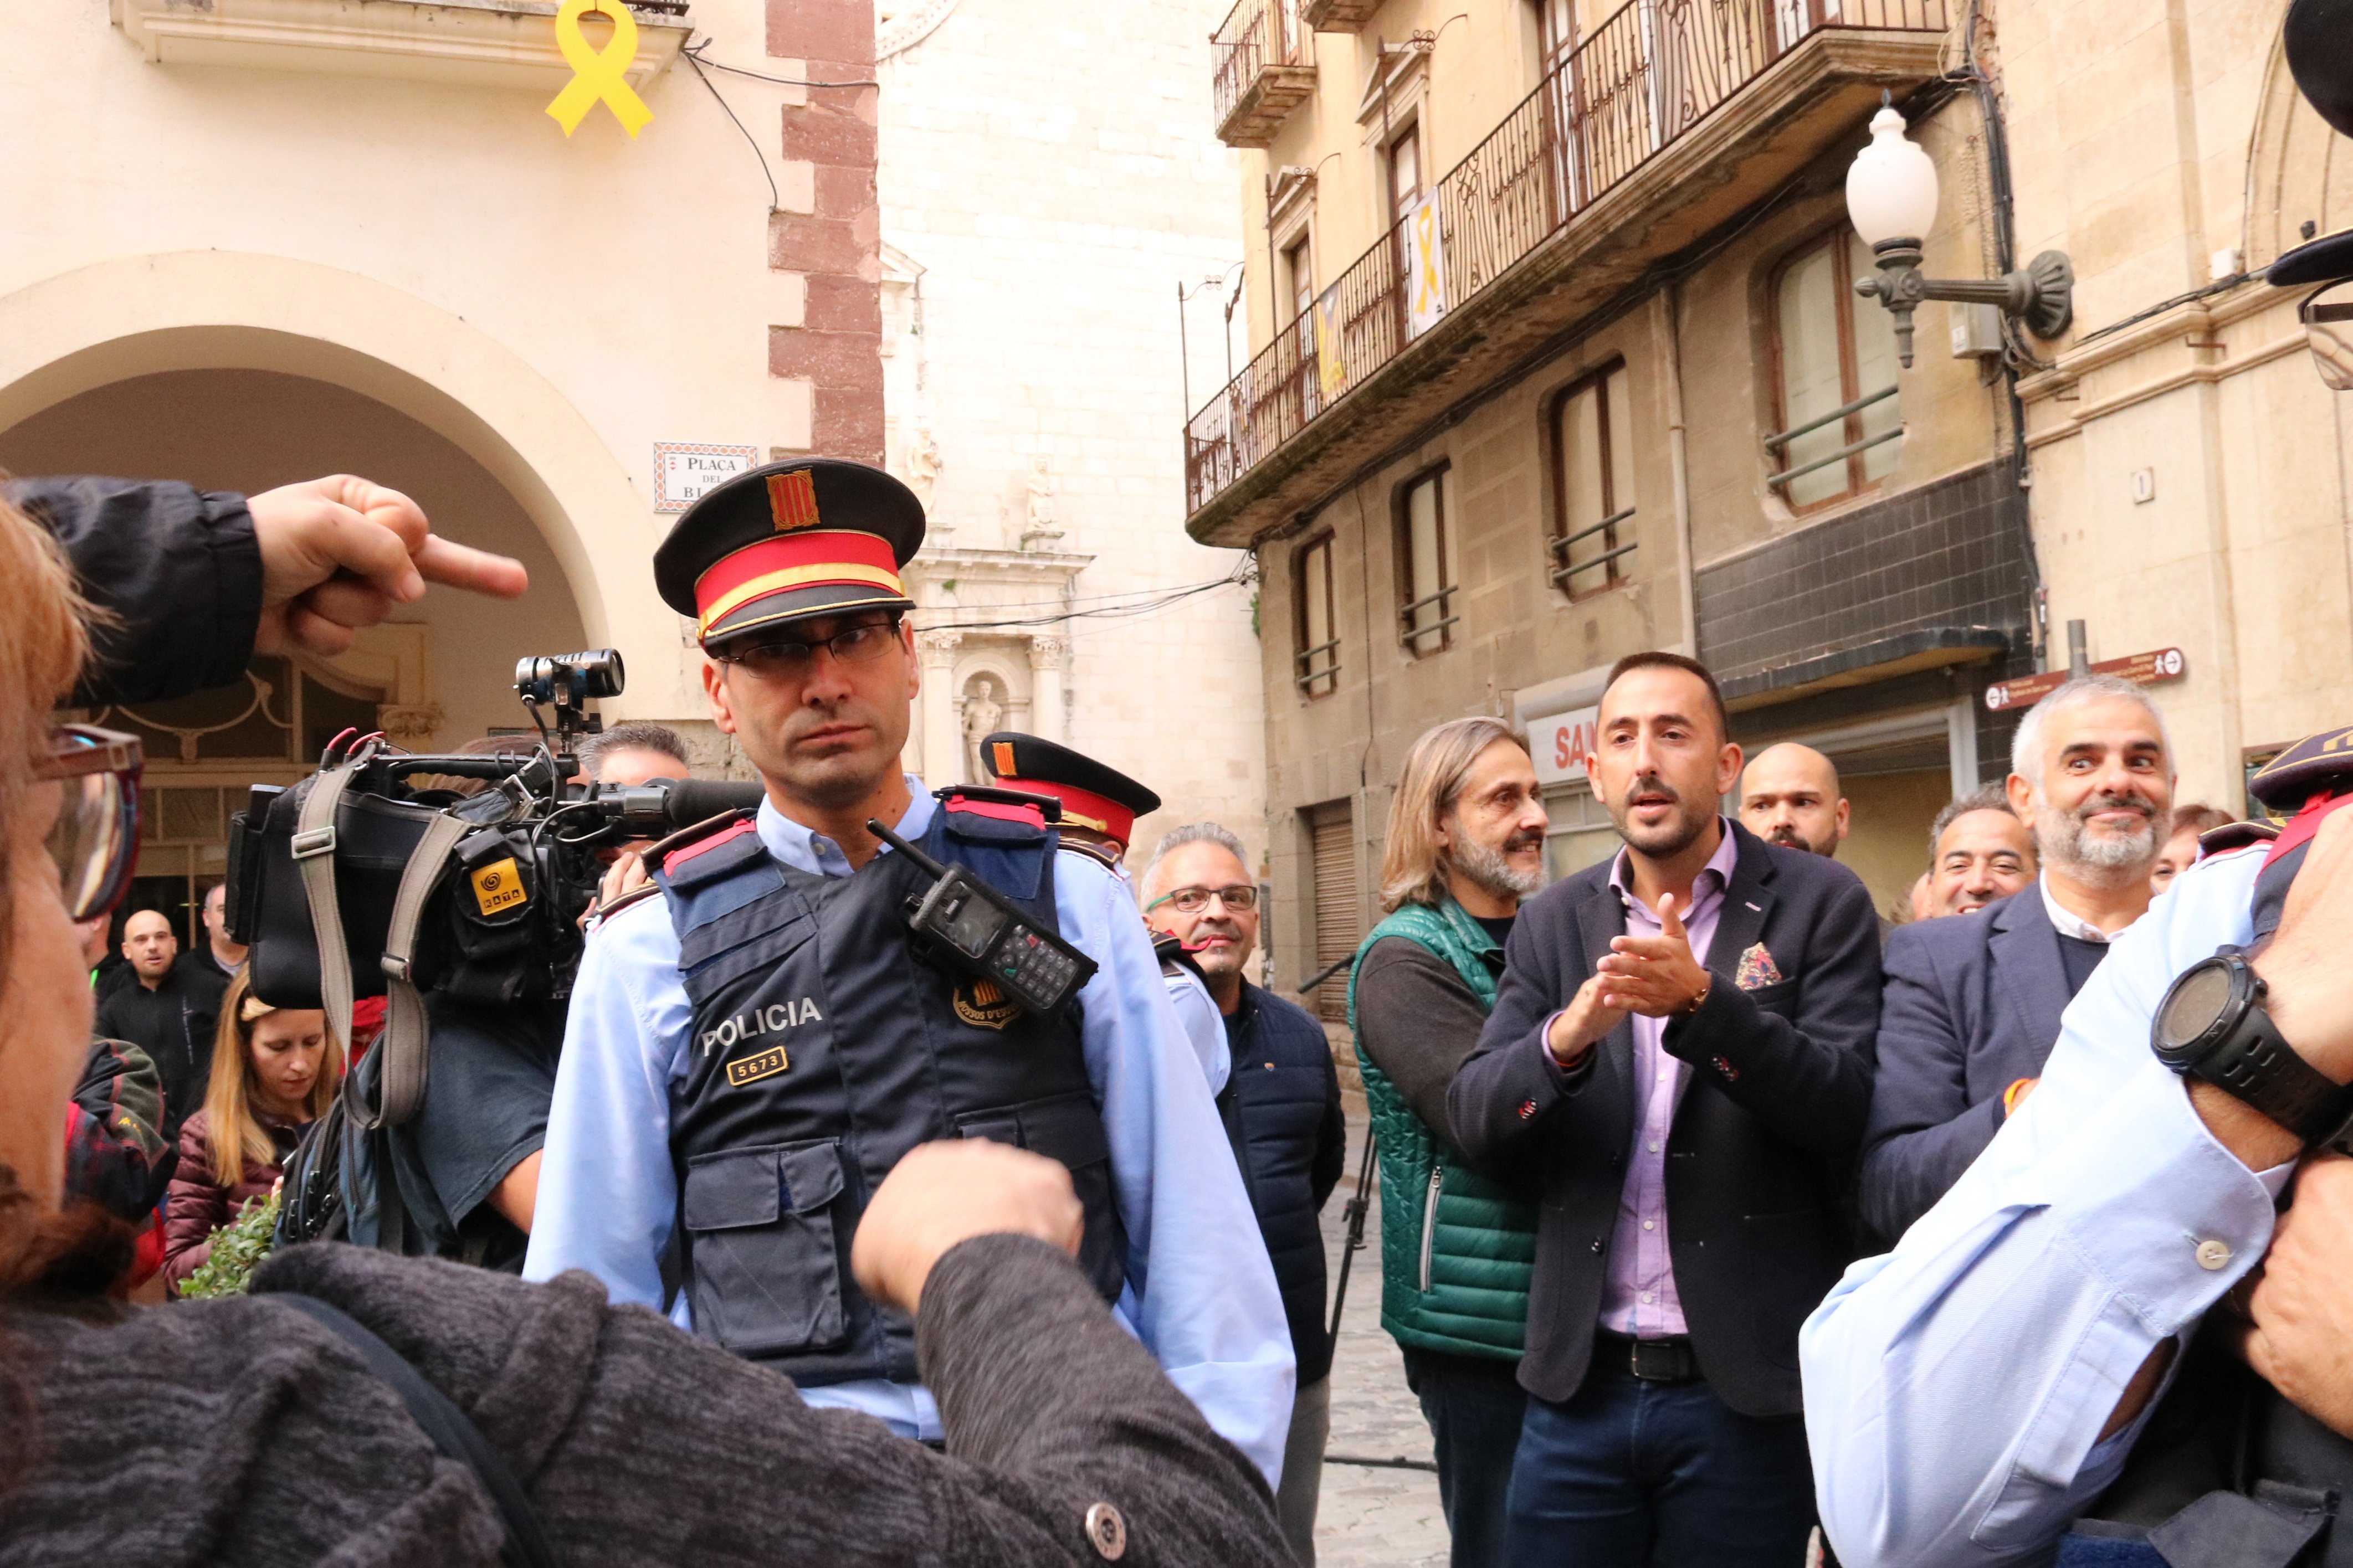 Carrizosa, escridassat a Valls després de menystenir els castells